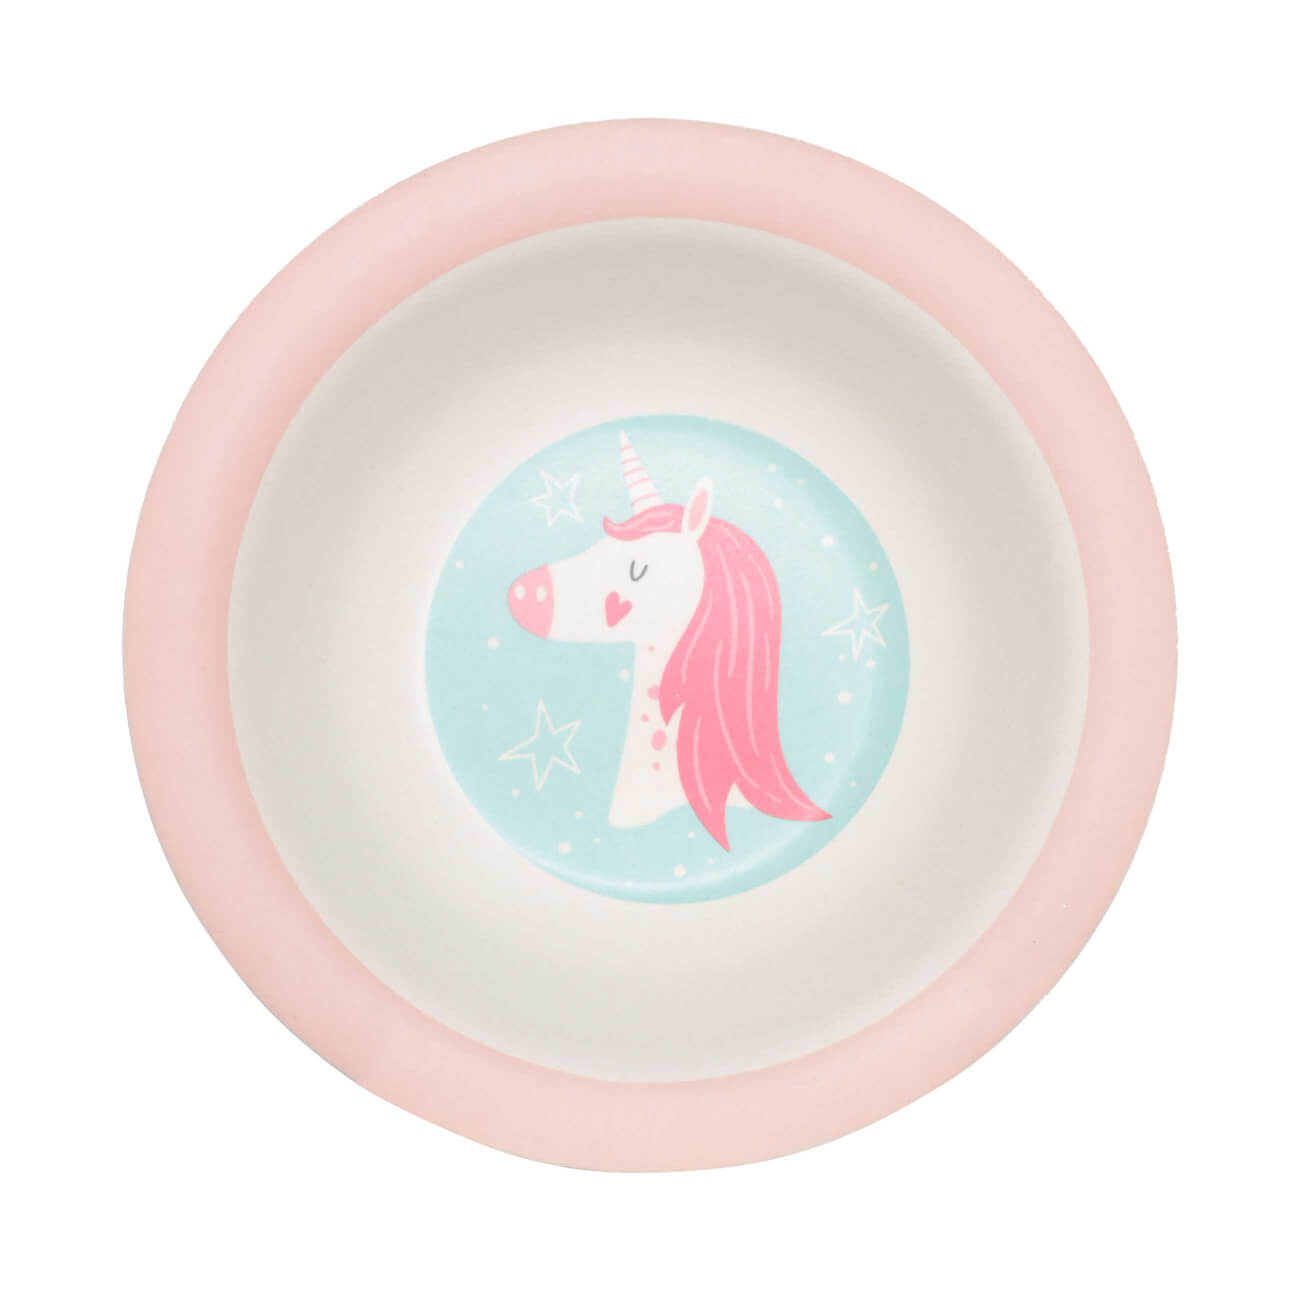 Тарелка суповая, детская, 15 см, бамбук, розово-мятная, Единорог и звезды, Unicorn тарелка закусочная детская 21 см бамбук розовая единорог и радуга unicorn